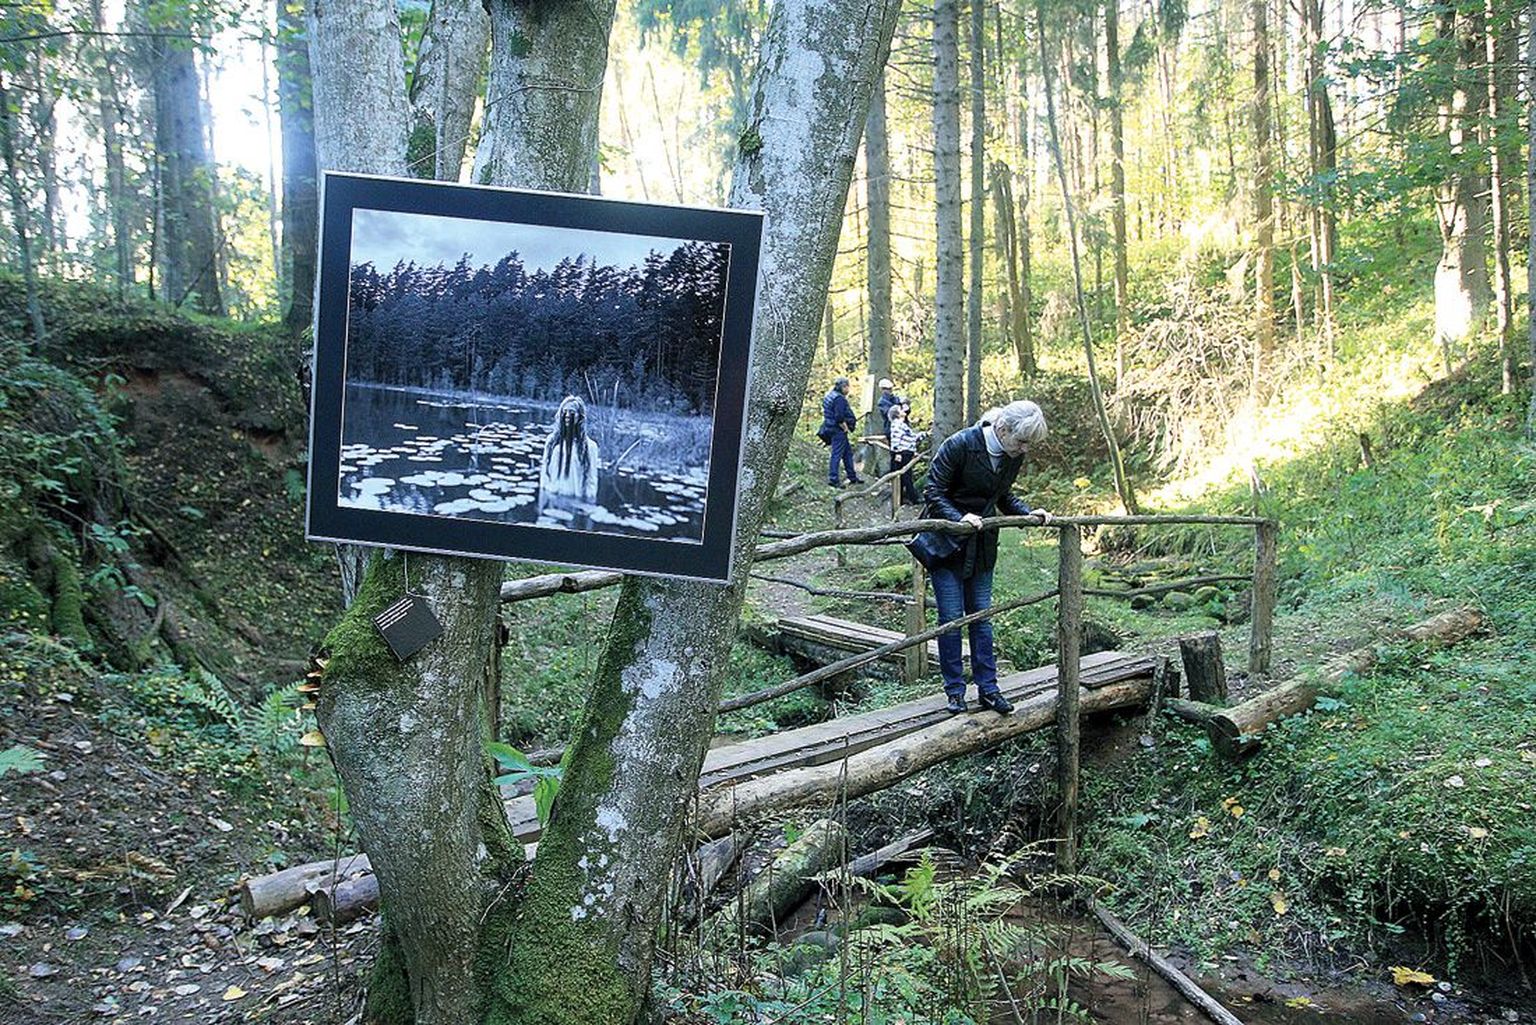 Foto neiust, kes seisab poolenisti vees, on seotud puutüve külge, nagu ka mustale paberile trükitud luuleread. Üks näituselisi on heitnud pilgu orus voolavale veele, teised vaatavad väljapaneku järgmist fotot.